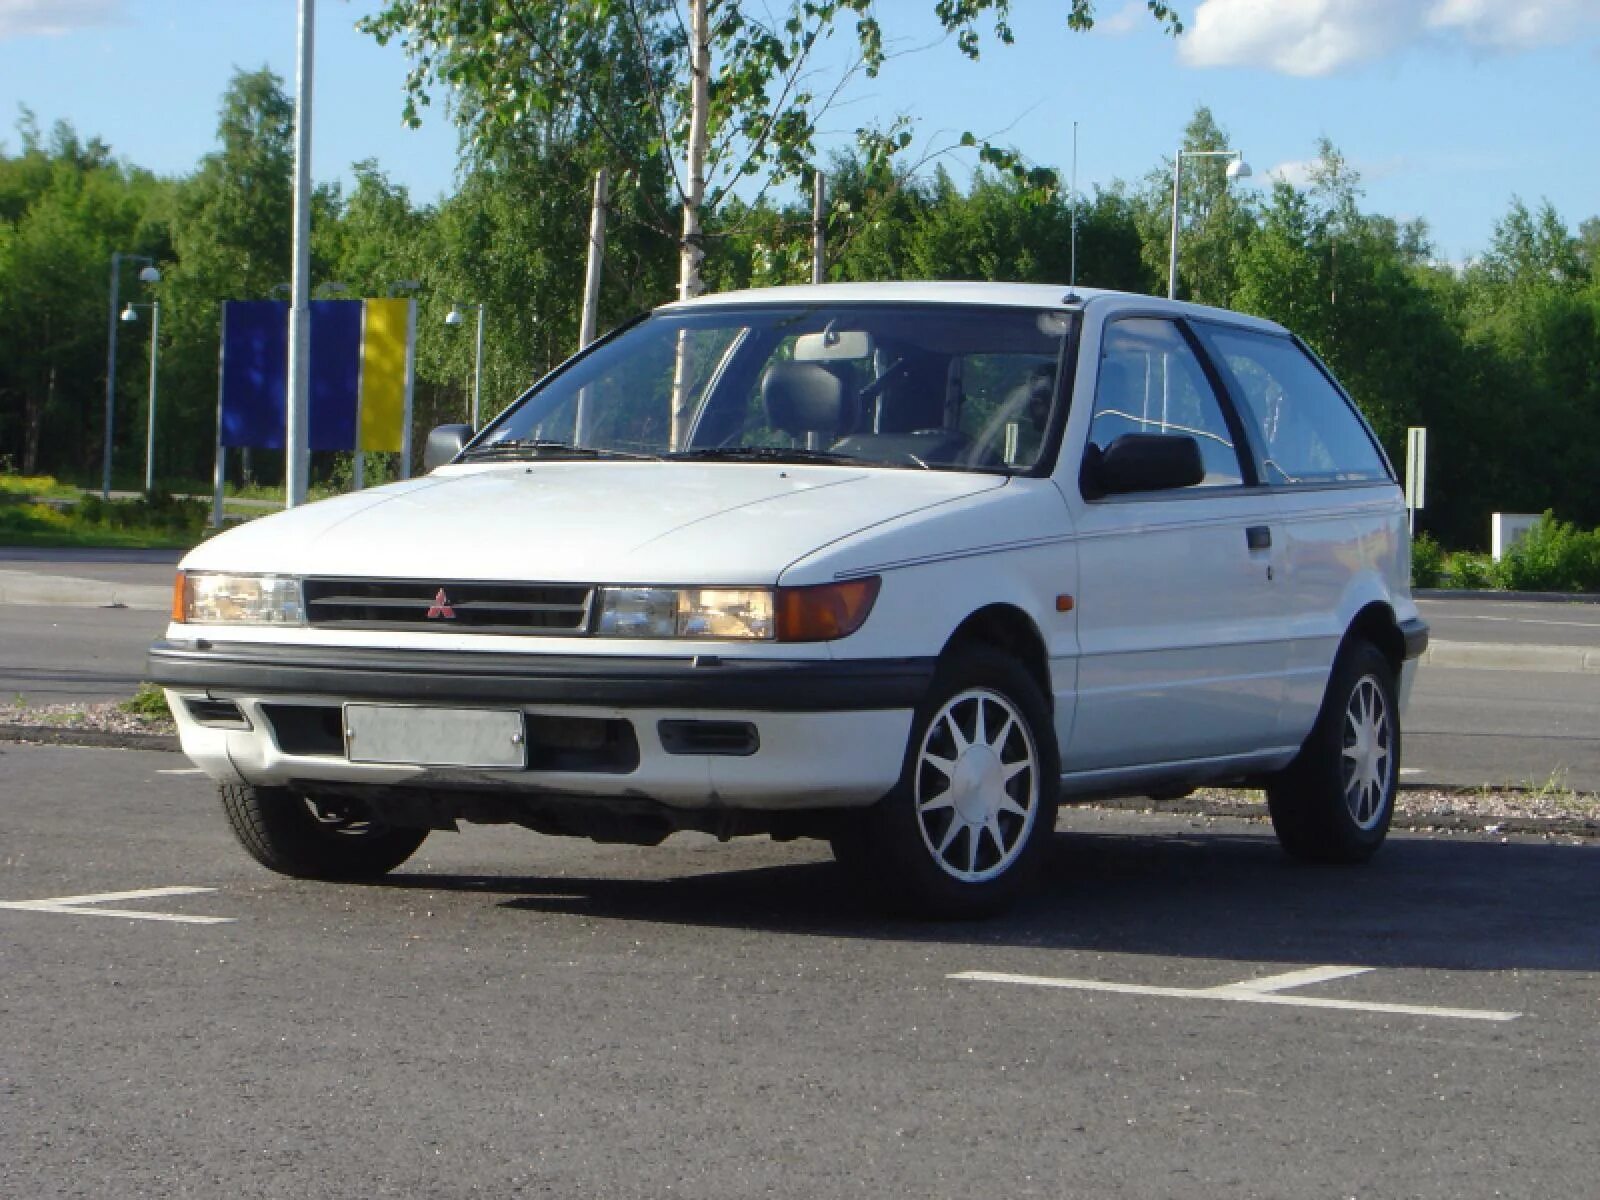 Митсубиси 1990. Митсубиси Мираж 1990. Mitsubishi Lancer 1990. Митсубиси Мираж седан 1990. Мицубиси Мираж 1990 года.